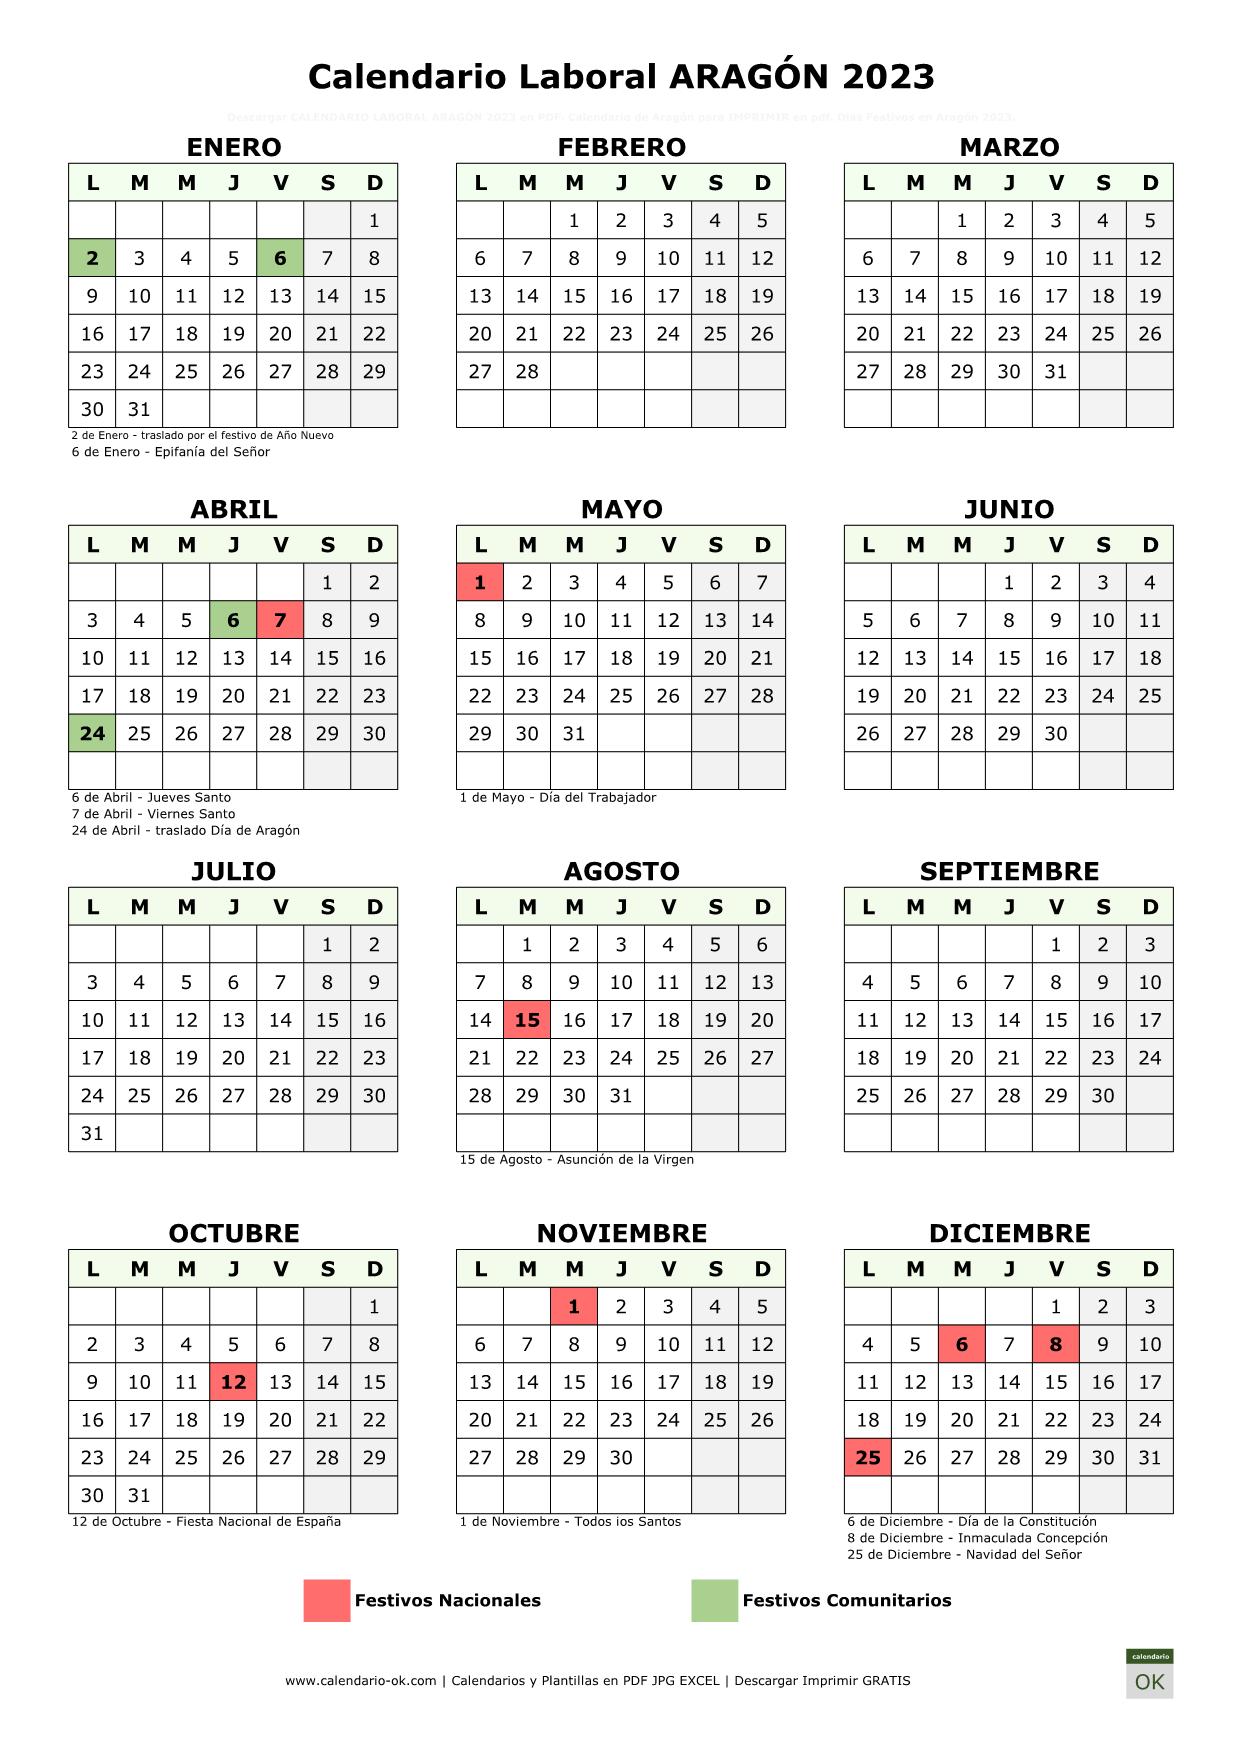 Calendario Laboral ARAGÓN 2023